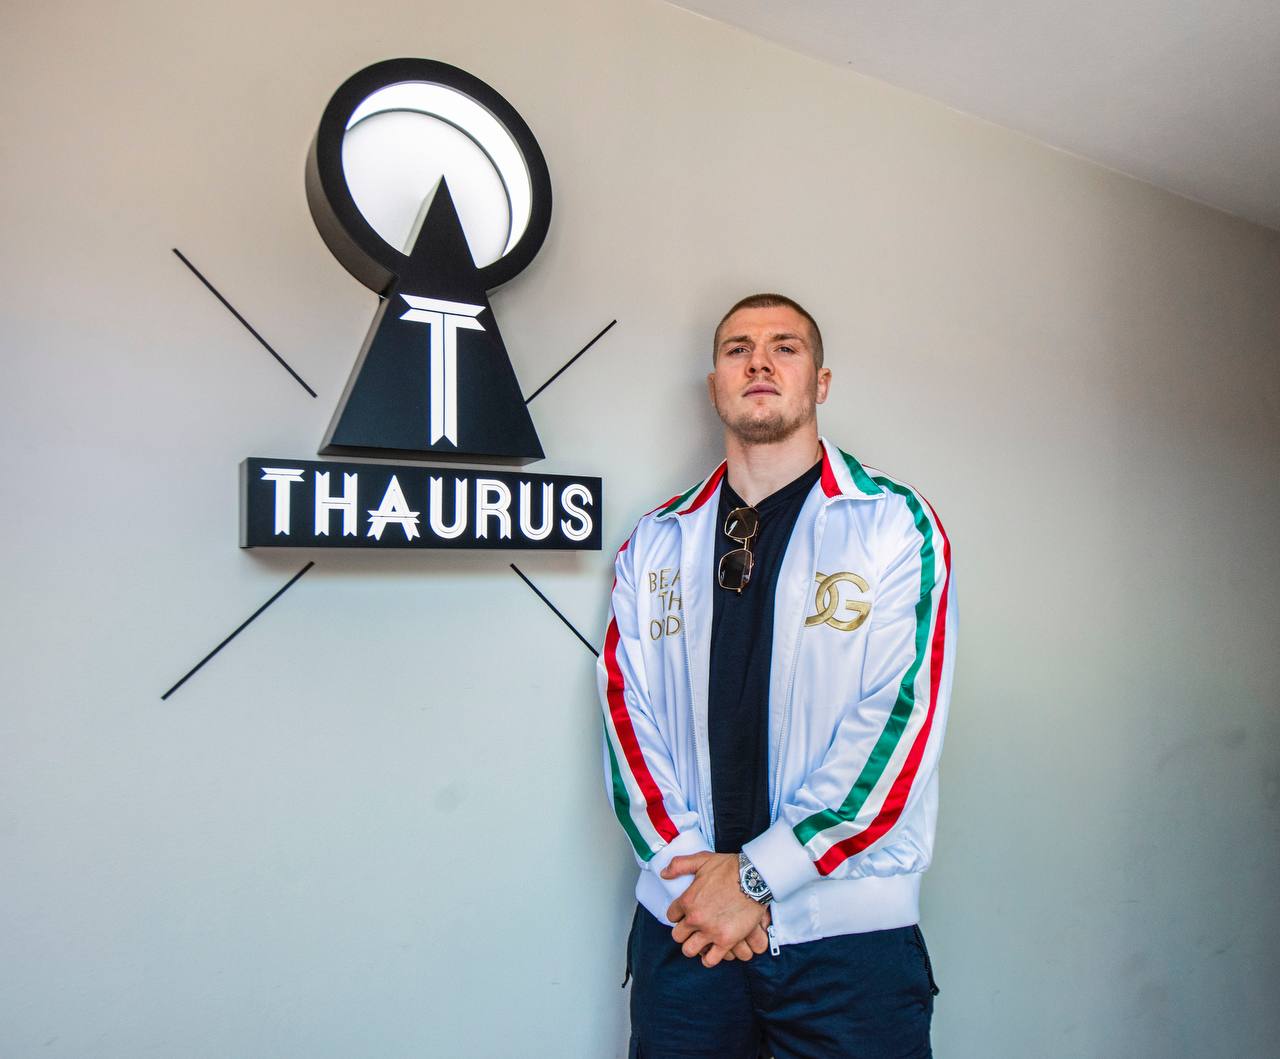 Thaurus annuncia la sua divisione sportiva: Thaurus Sport